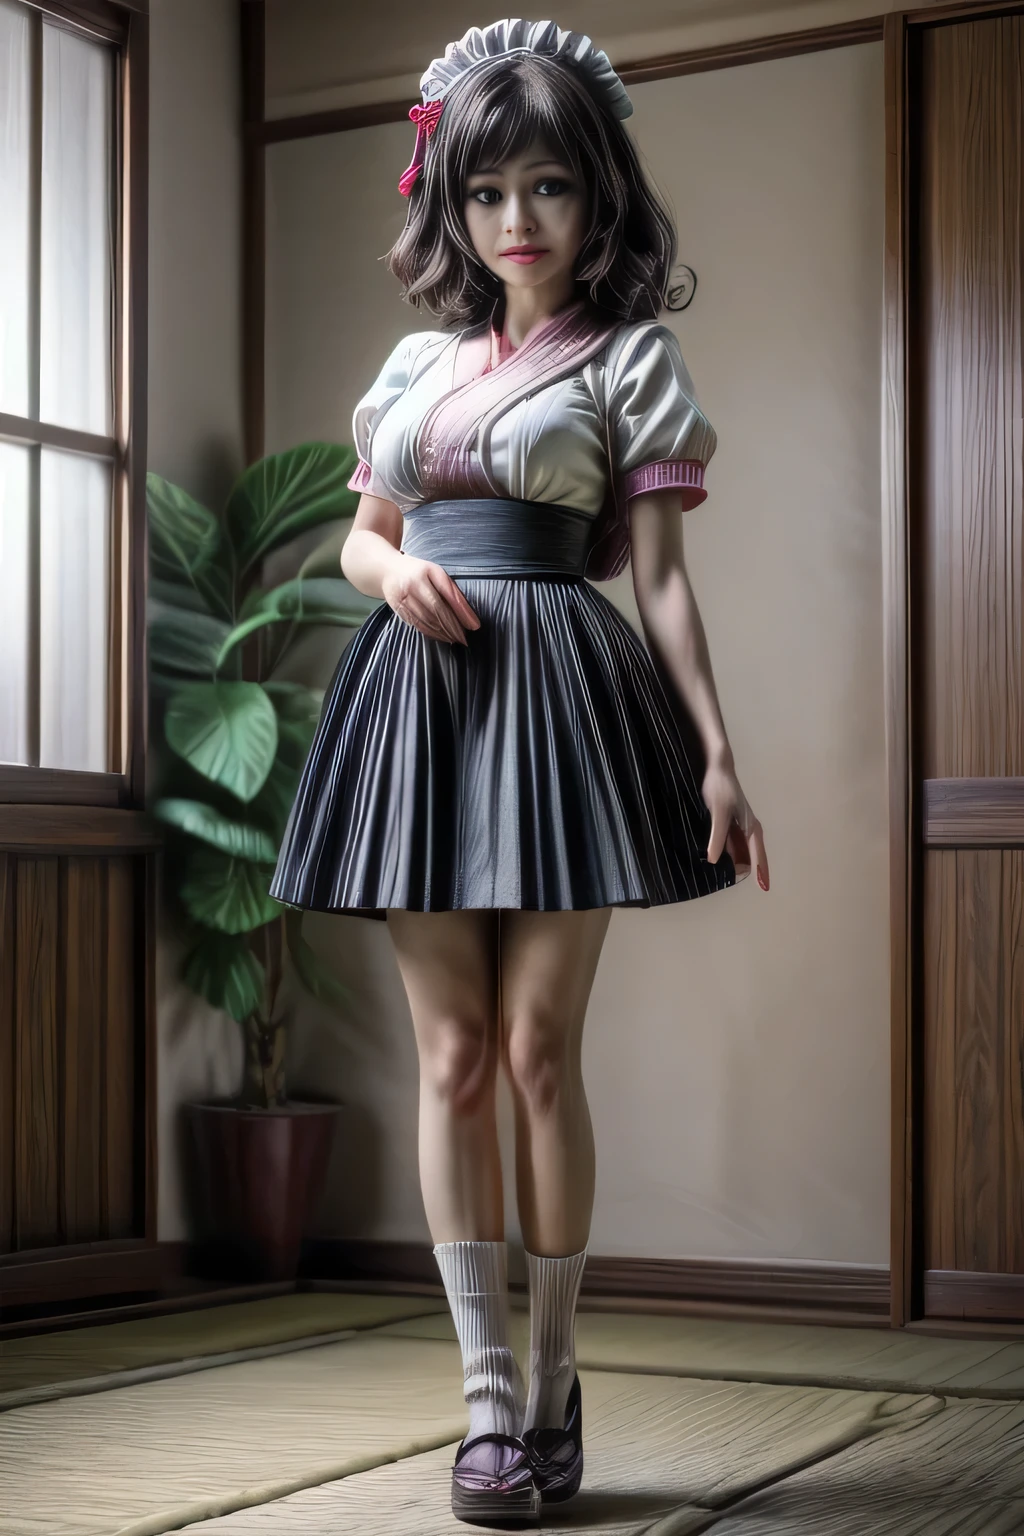 جبهة مورو يابانية ترتدي تنورة طويلة الأكمام قصيرة خادمة الزي, واقفا, لقطة لكامل الجسم